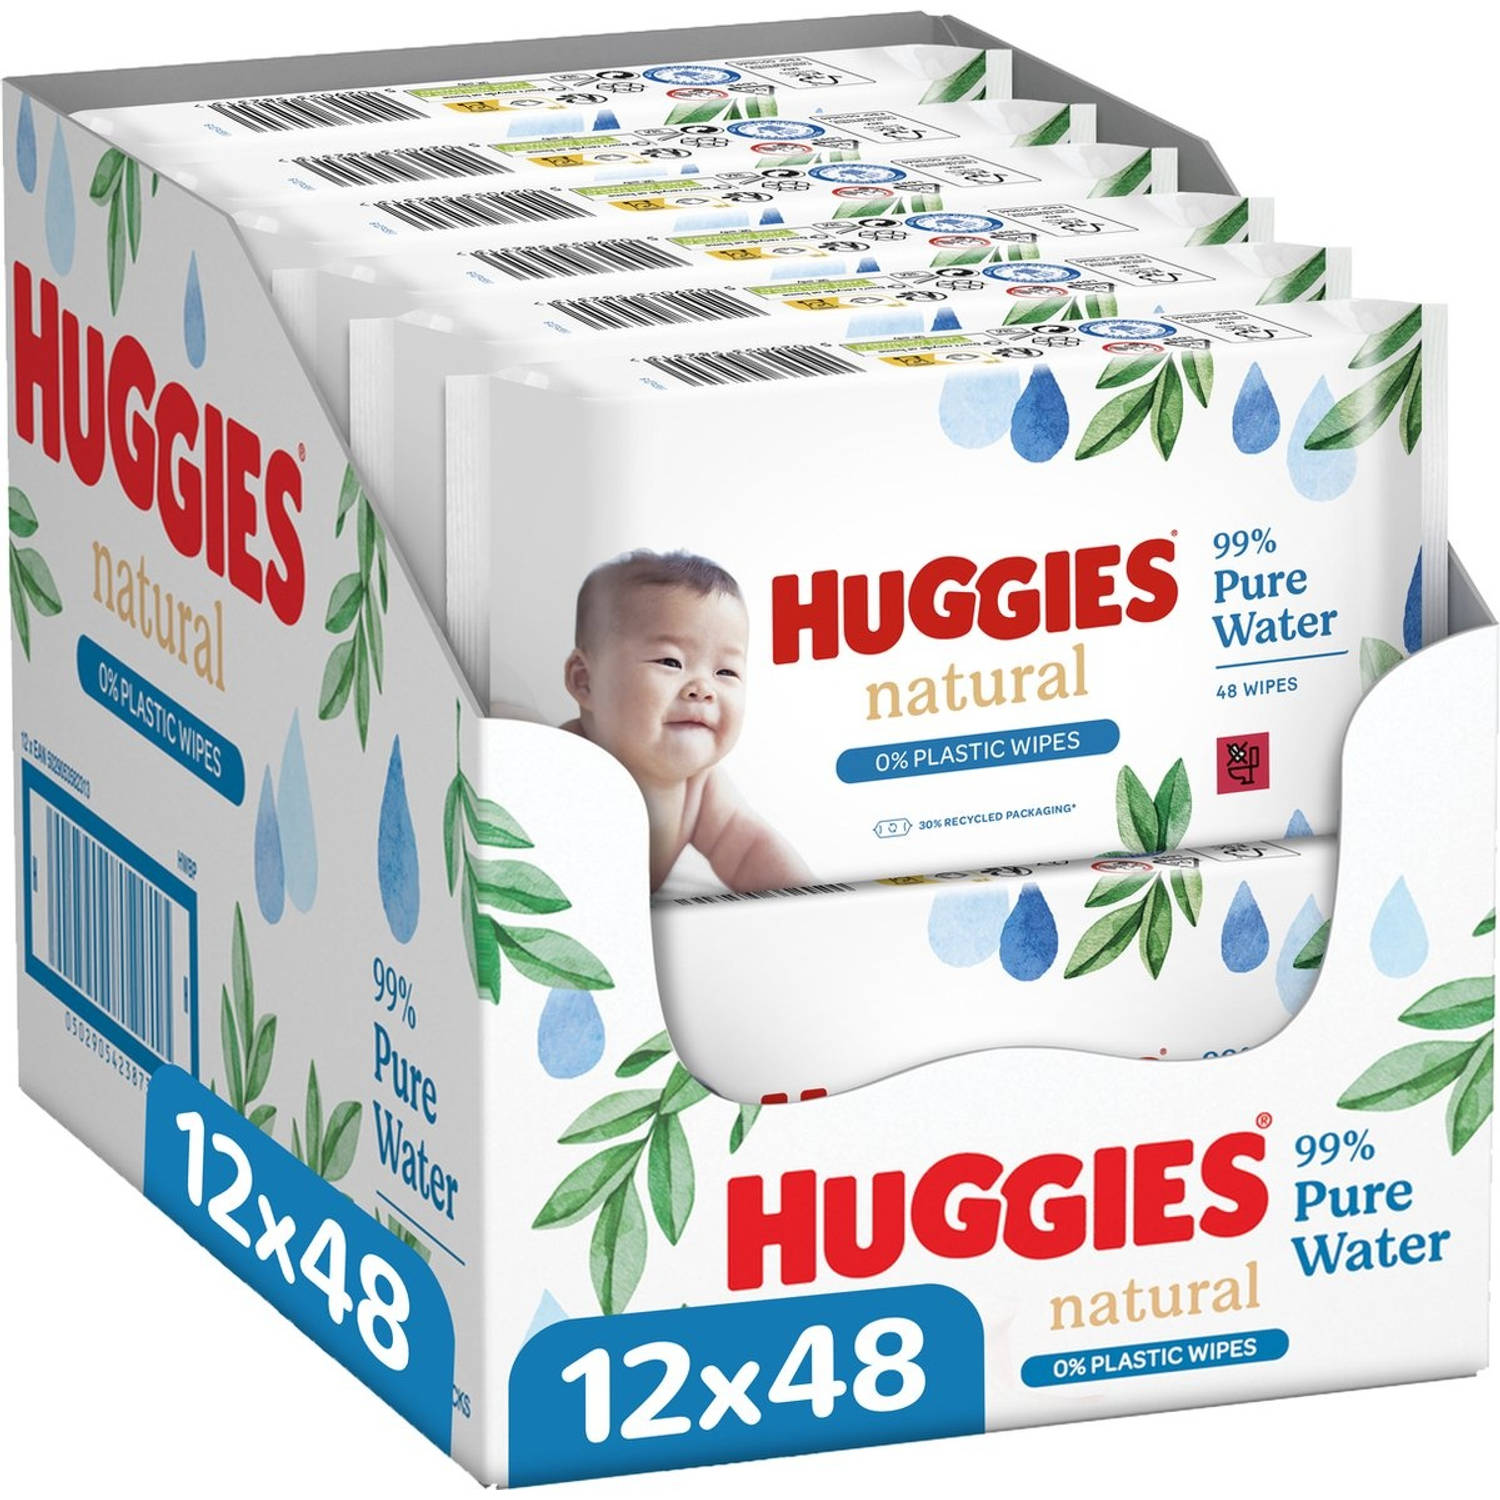 12x Huggies Billendoekjes Natural 0% plastic 12x48=576 doekjes